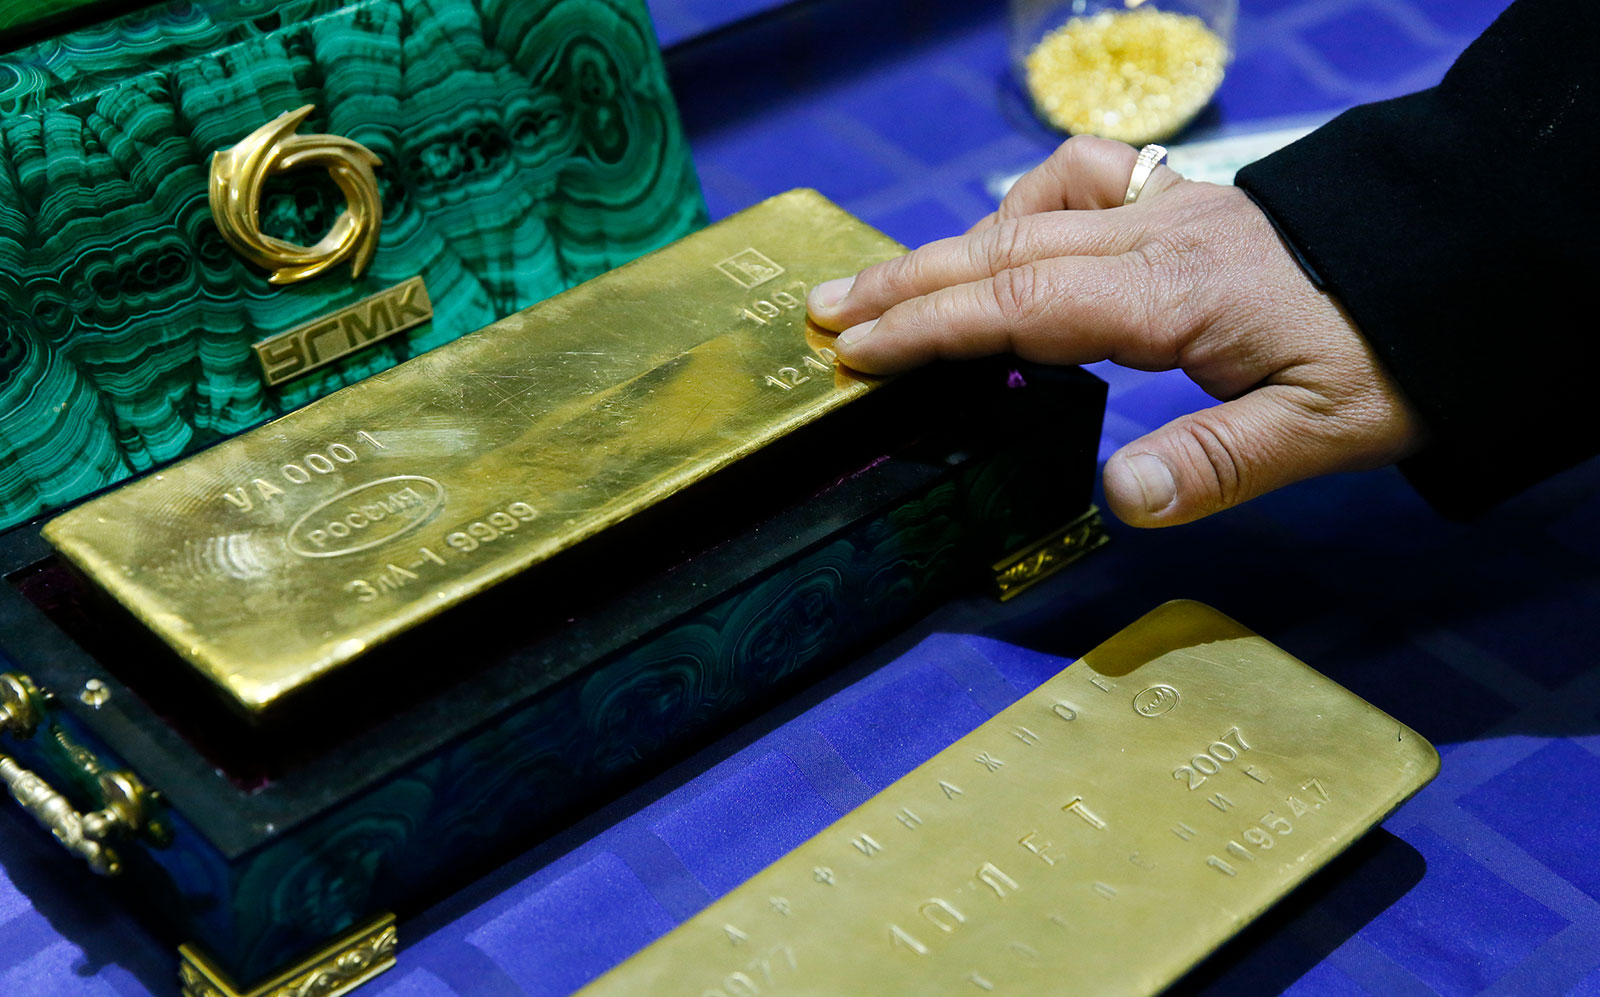 Shtetet e Bashkuara të Amerikës bllokojnë importin e arit rus